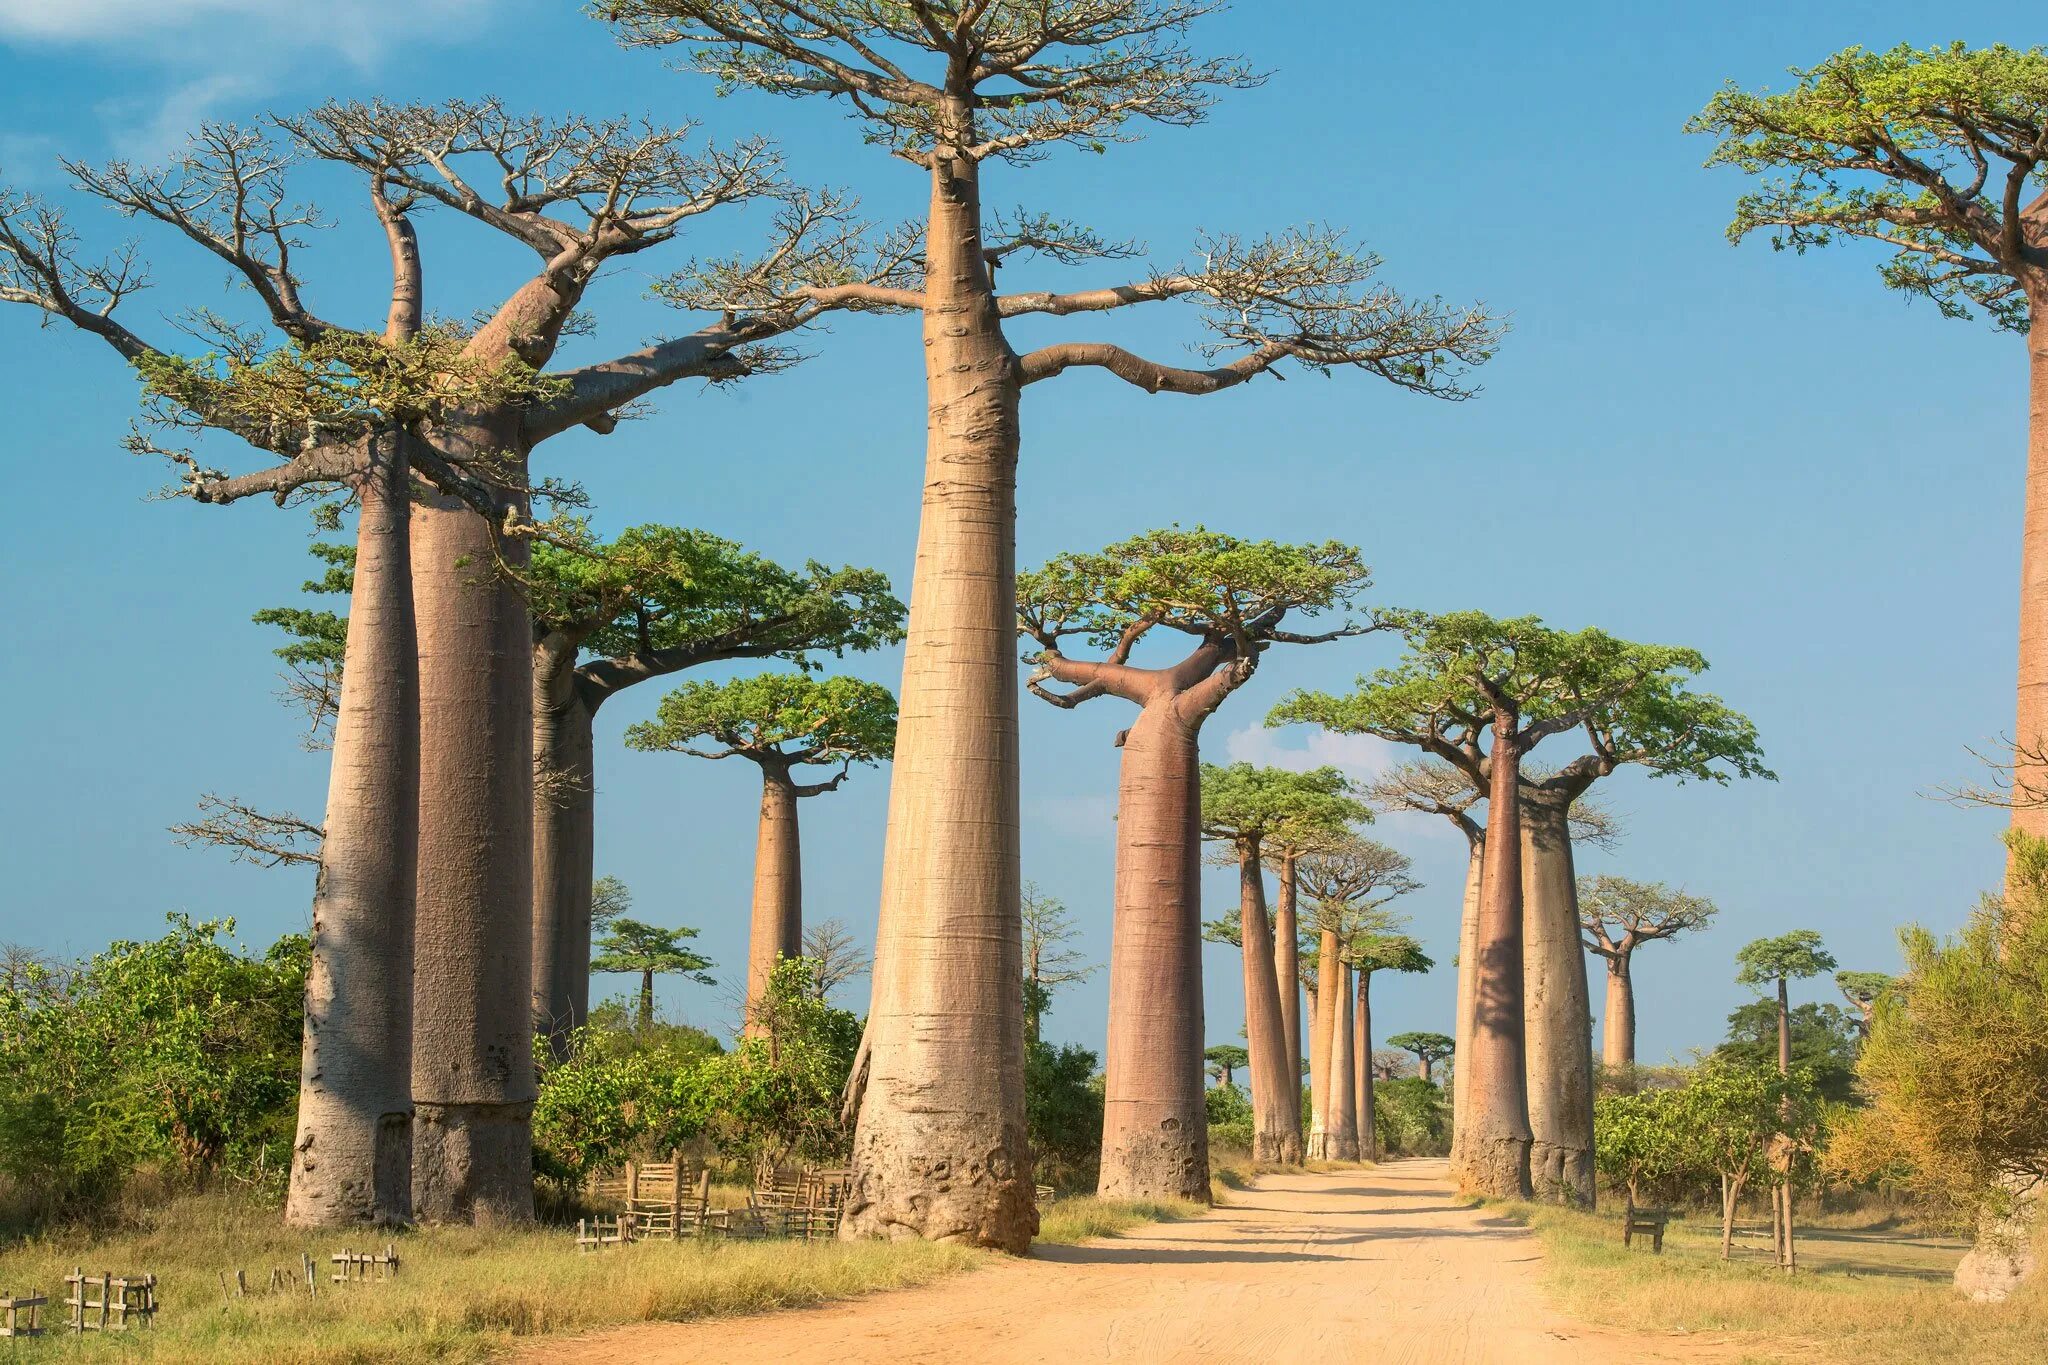 Ба баб. Баобаб дерево. Африканское дерево баобаб. Дерево в Африке баобаб. Баобаб в саванне Африки.